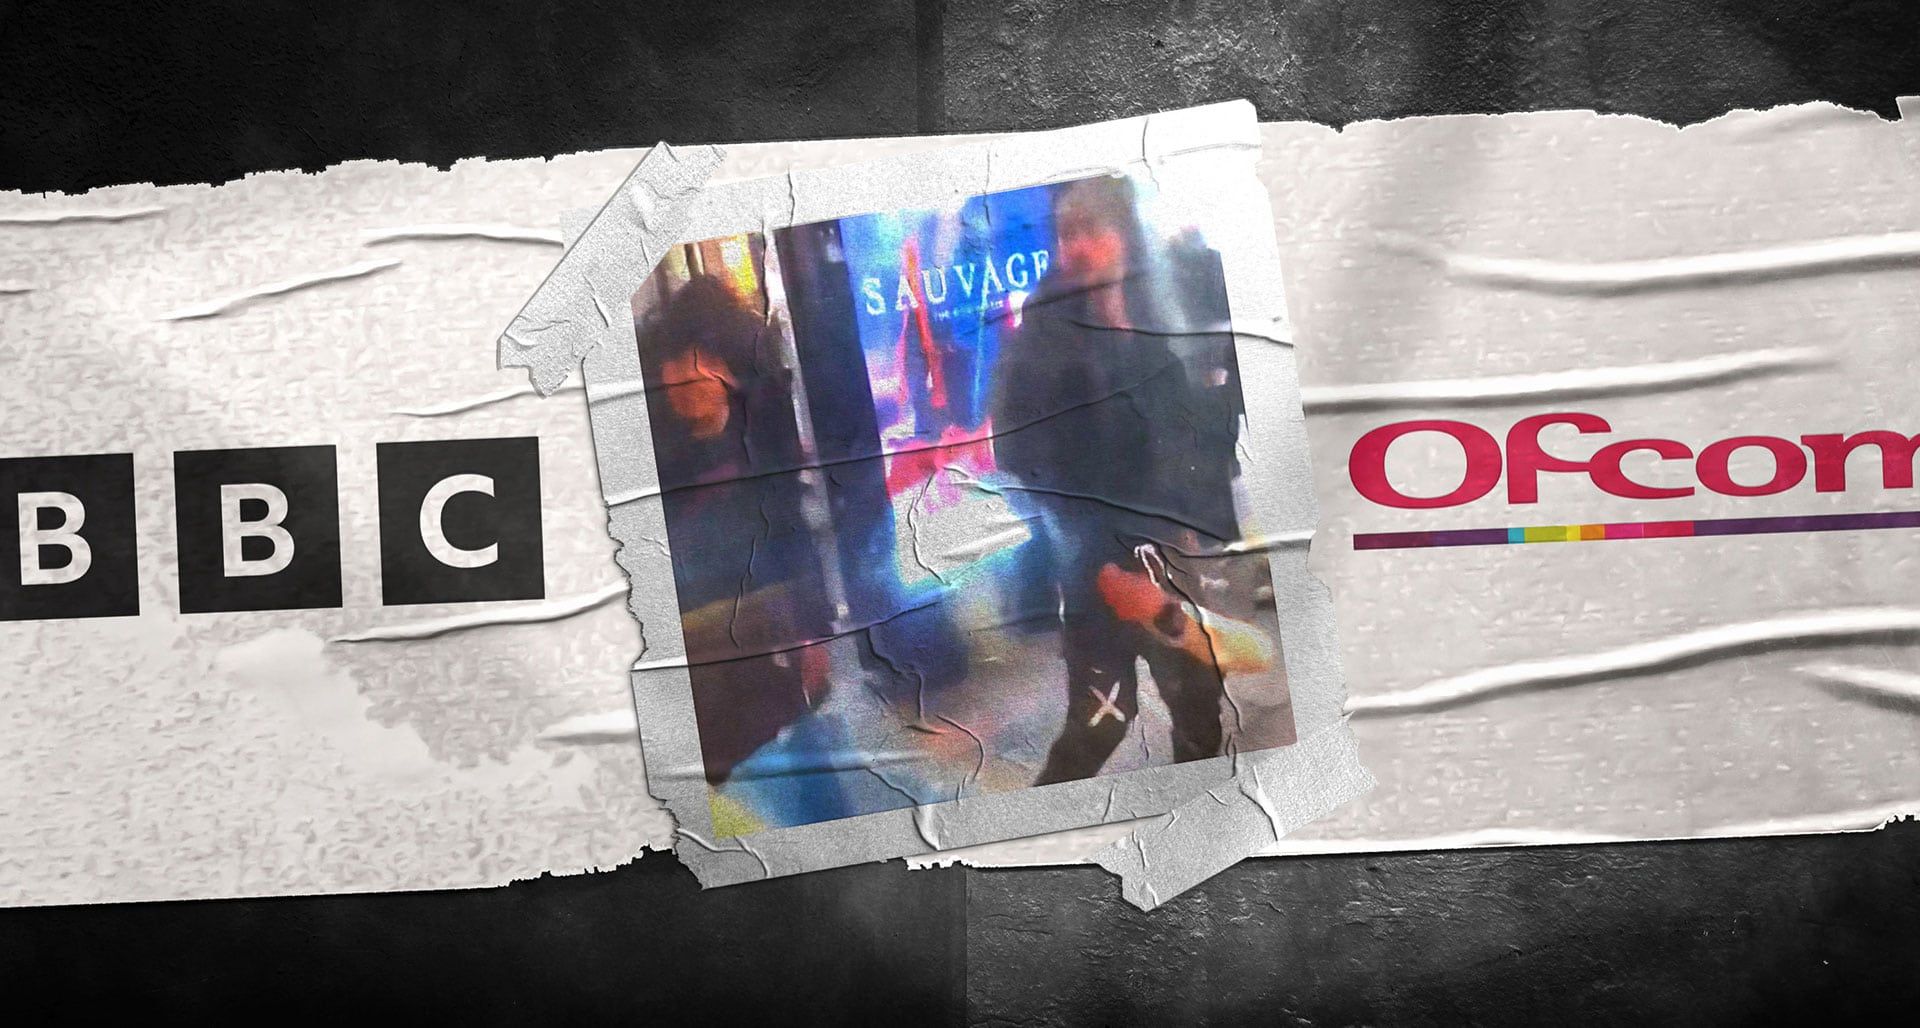 BBC Ofcom investigation